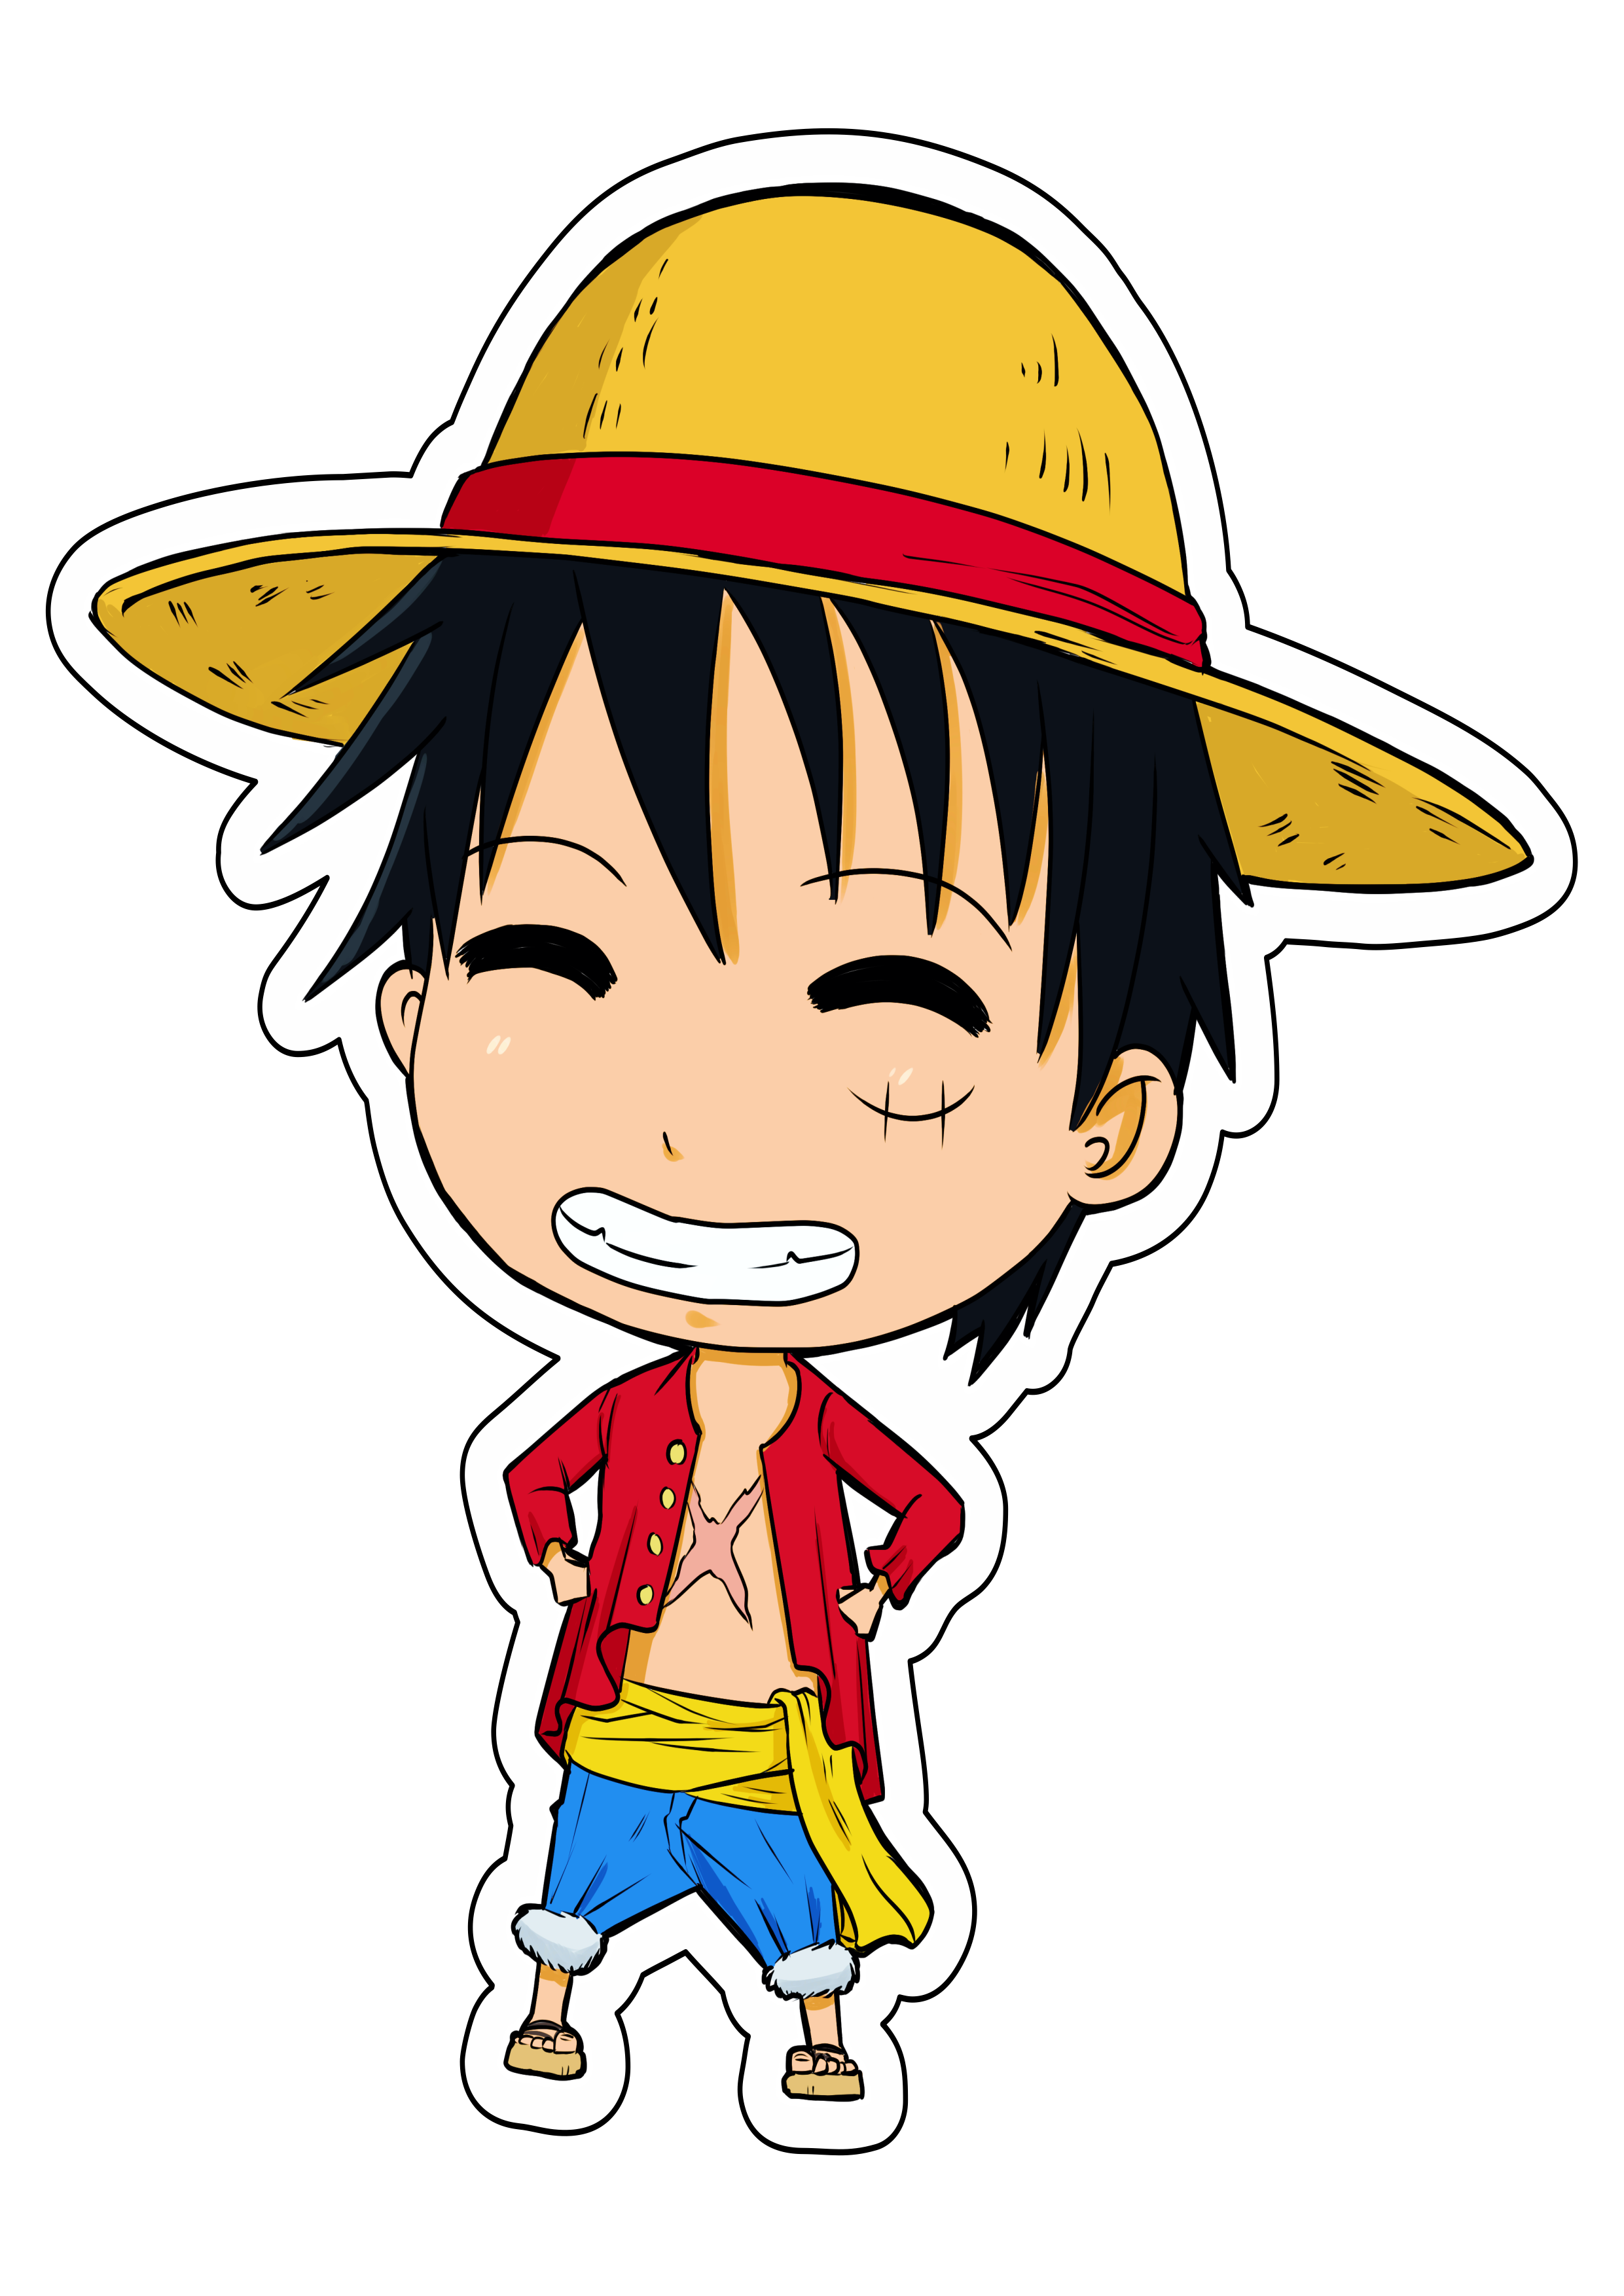 Arte: Desenho do Luffy criança